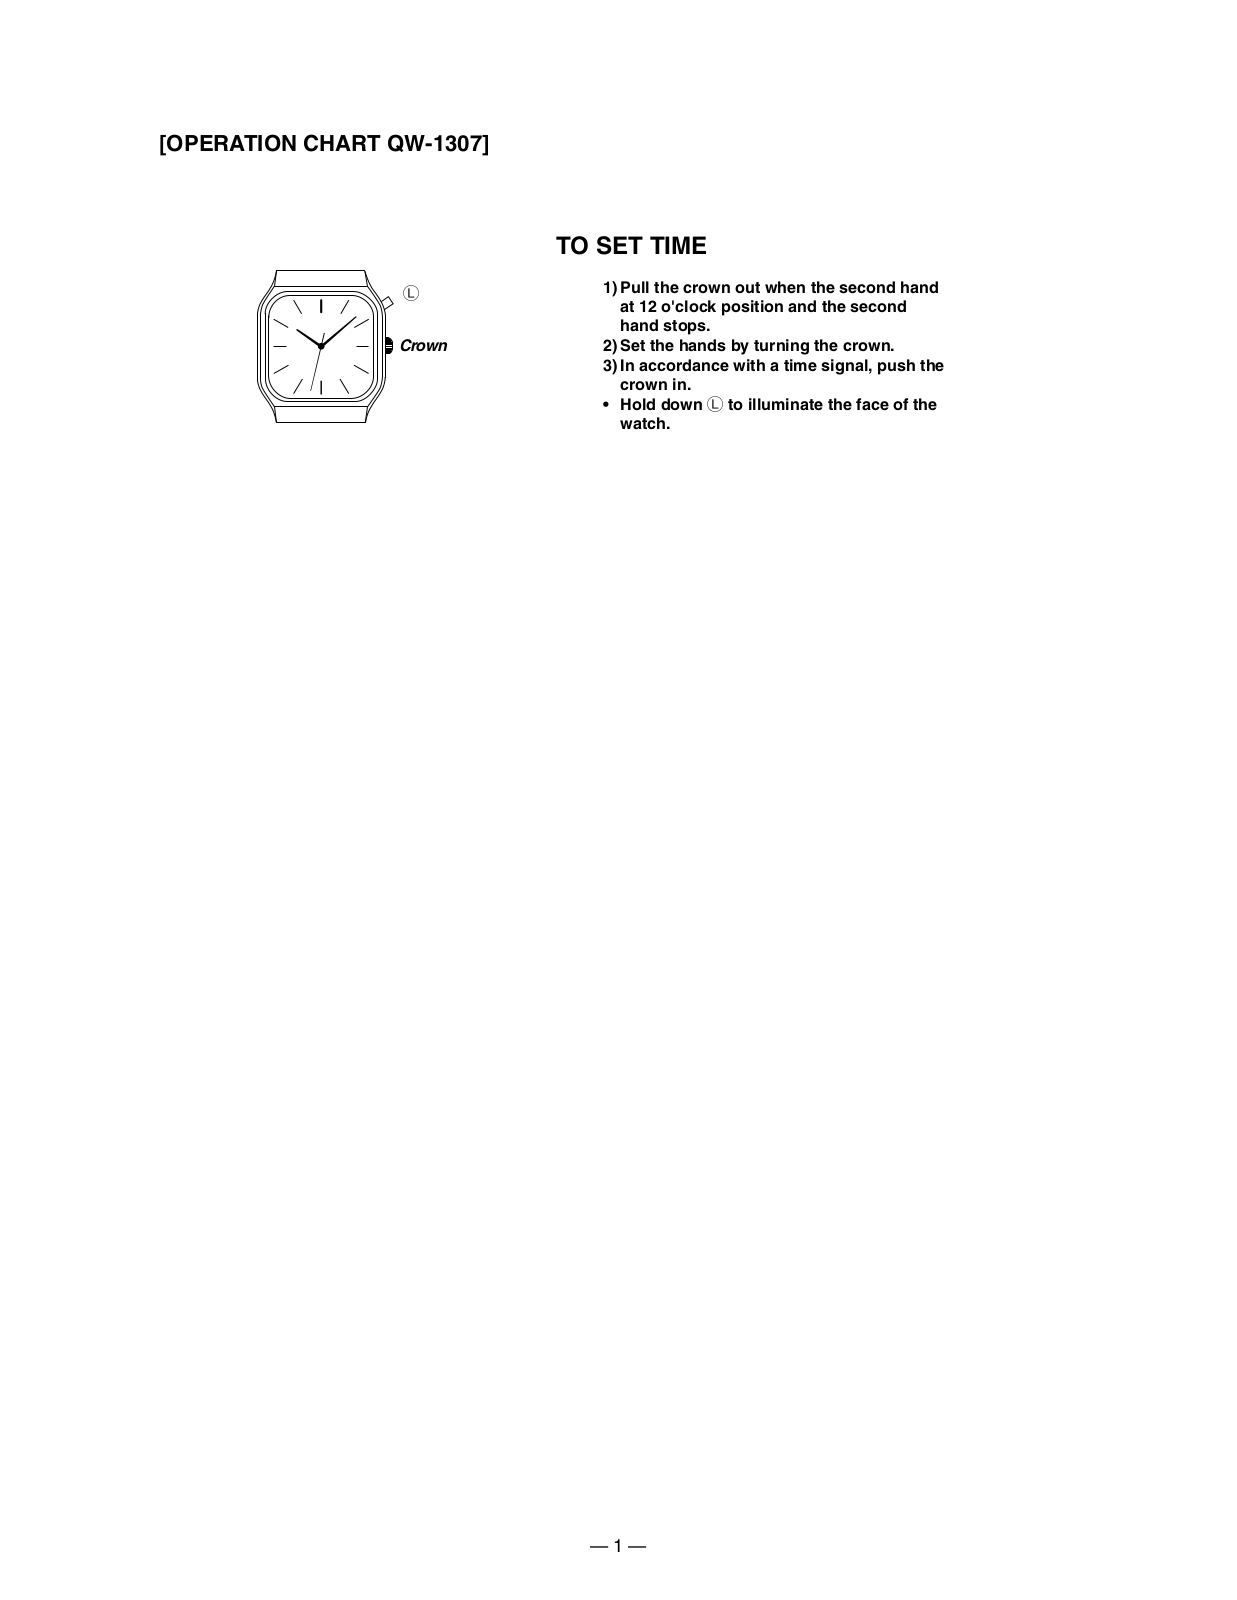 Casio 1307 Owner's Manual